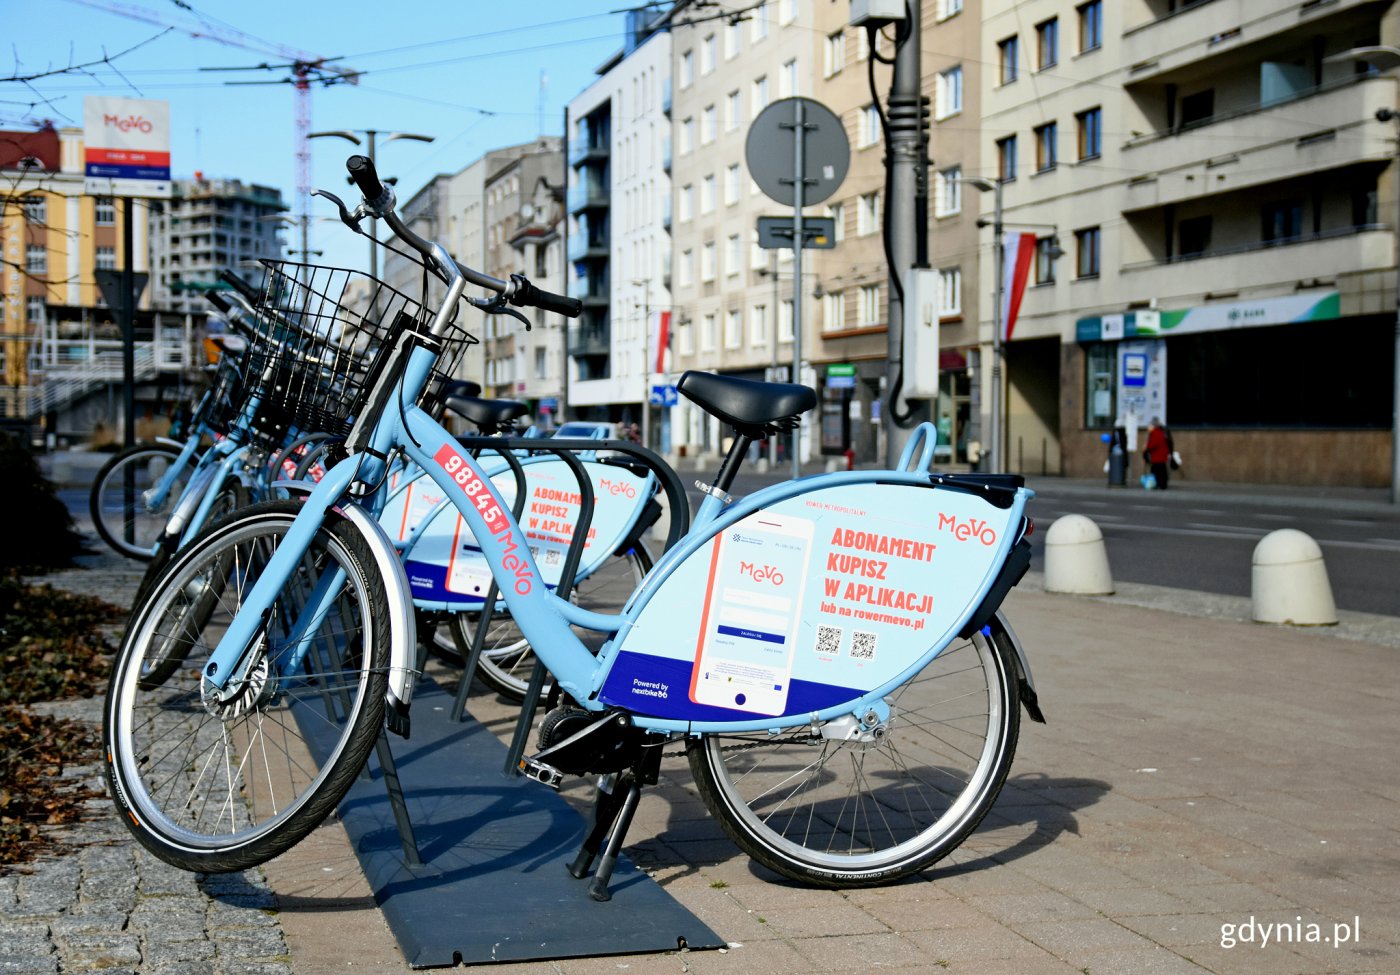 Niebieskie rowery systemu Mevo 1.0 to już przeszłość. Sąd podjął decyzję w sprawie spółki NB Tricity i Nextbike Polska, które rozczarowały tysiące użytkowników metropolitalnych rowerów, fot. Kamil Złoch / archiwalne (2019)